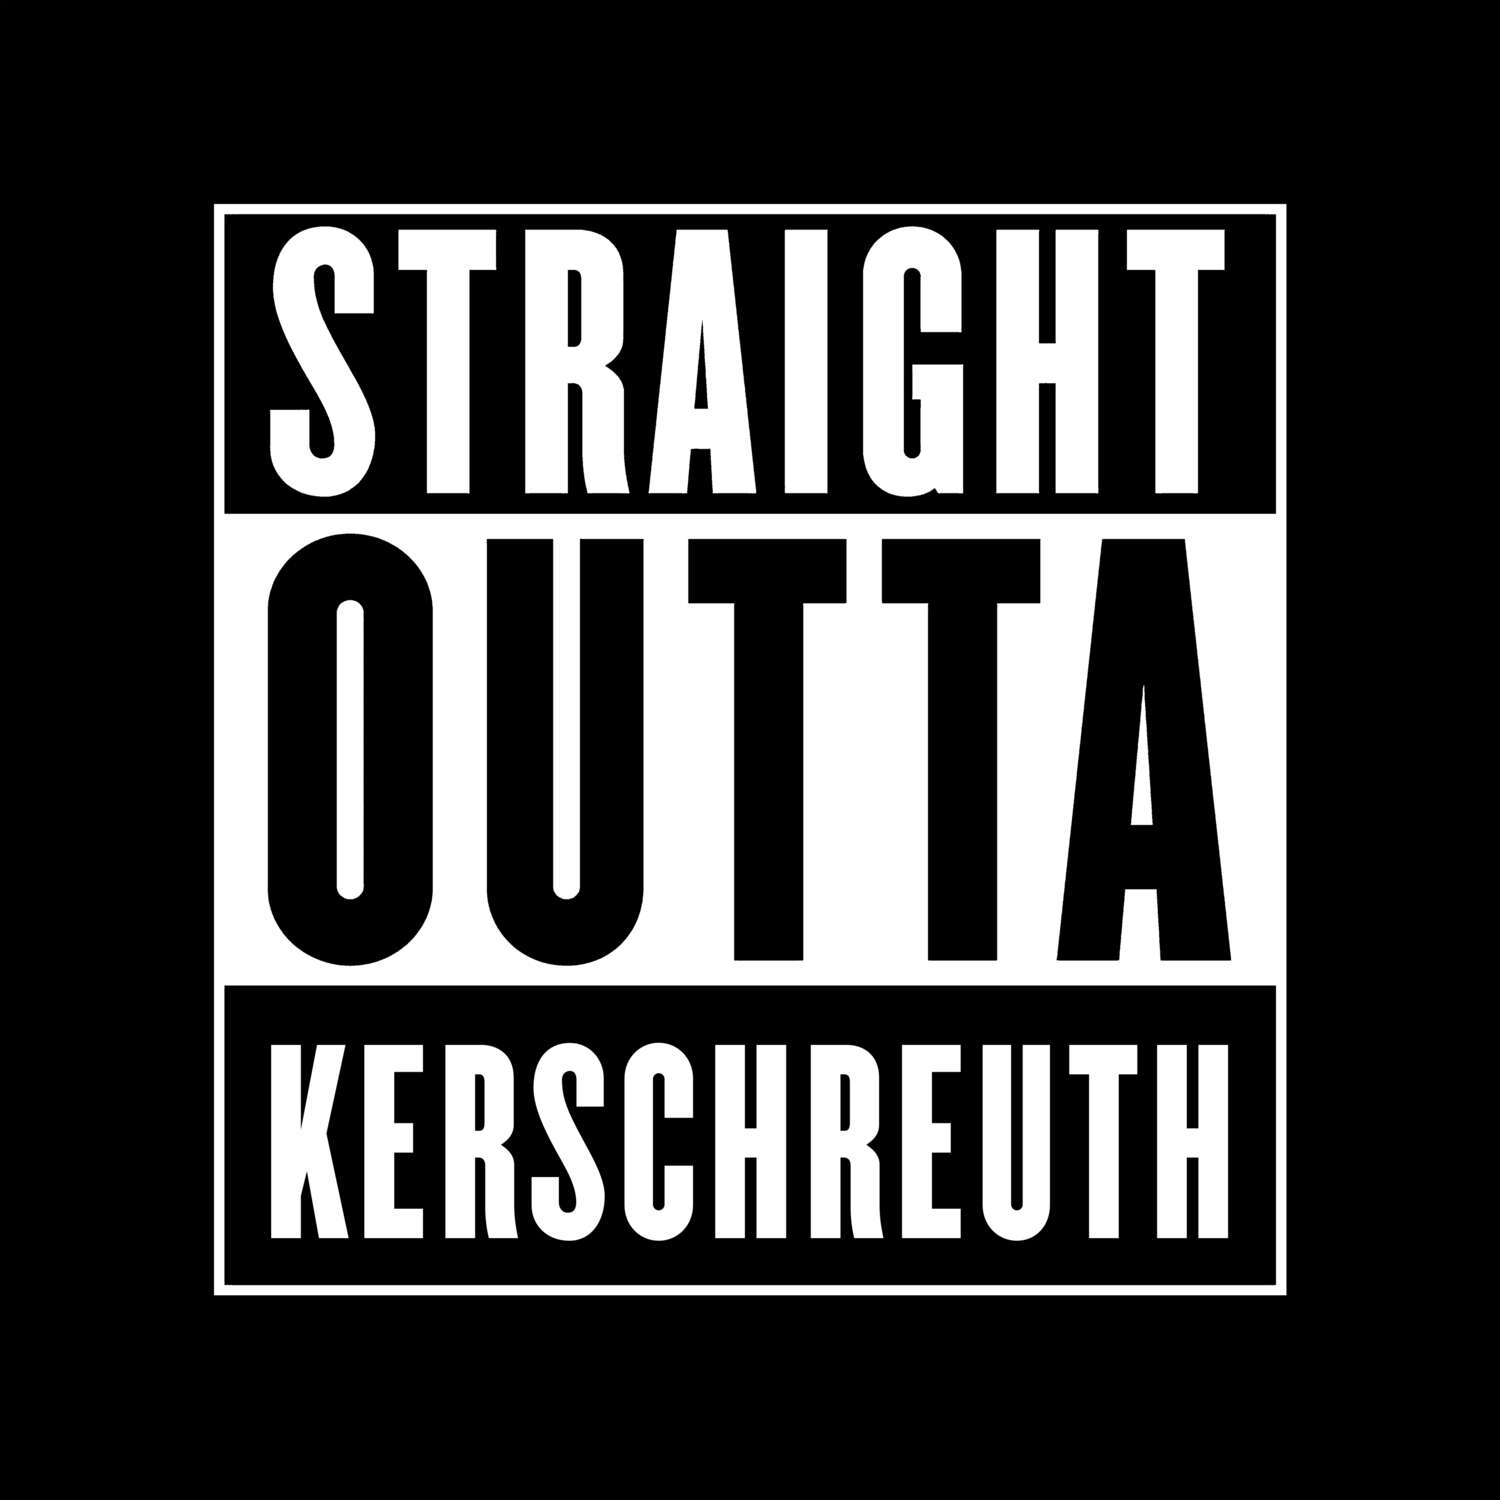 Kerschreuth T-Shirt »Straight Outta«